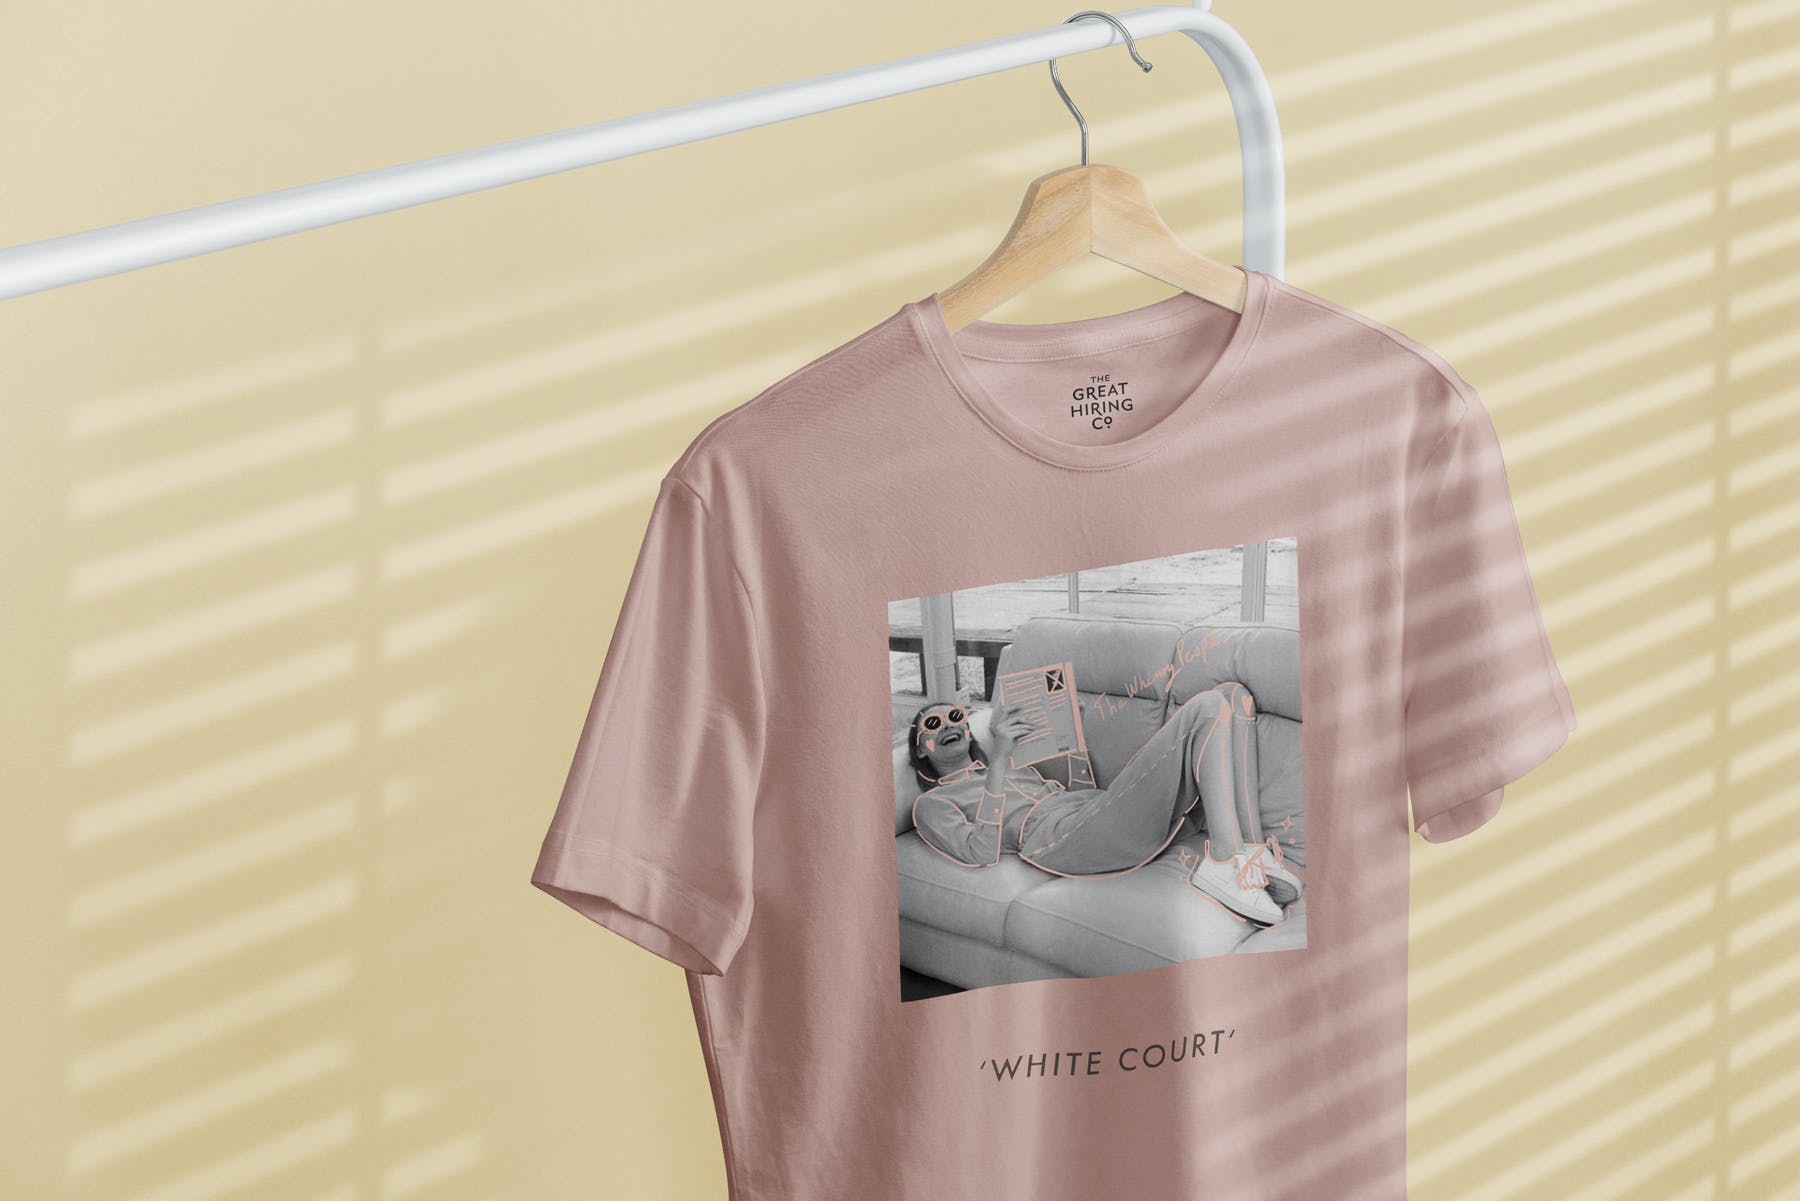 简易晾衣架T恤设计效果图样机第一素材精选 T-Shirt Mock-Up on Hanger插图(7)